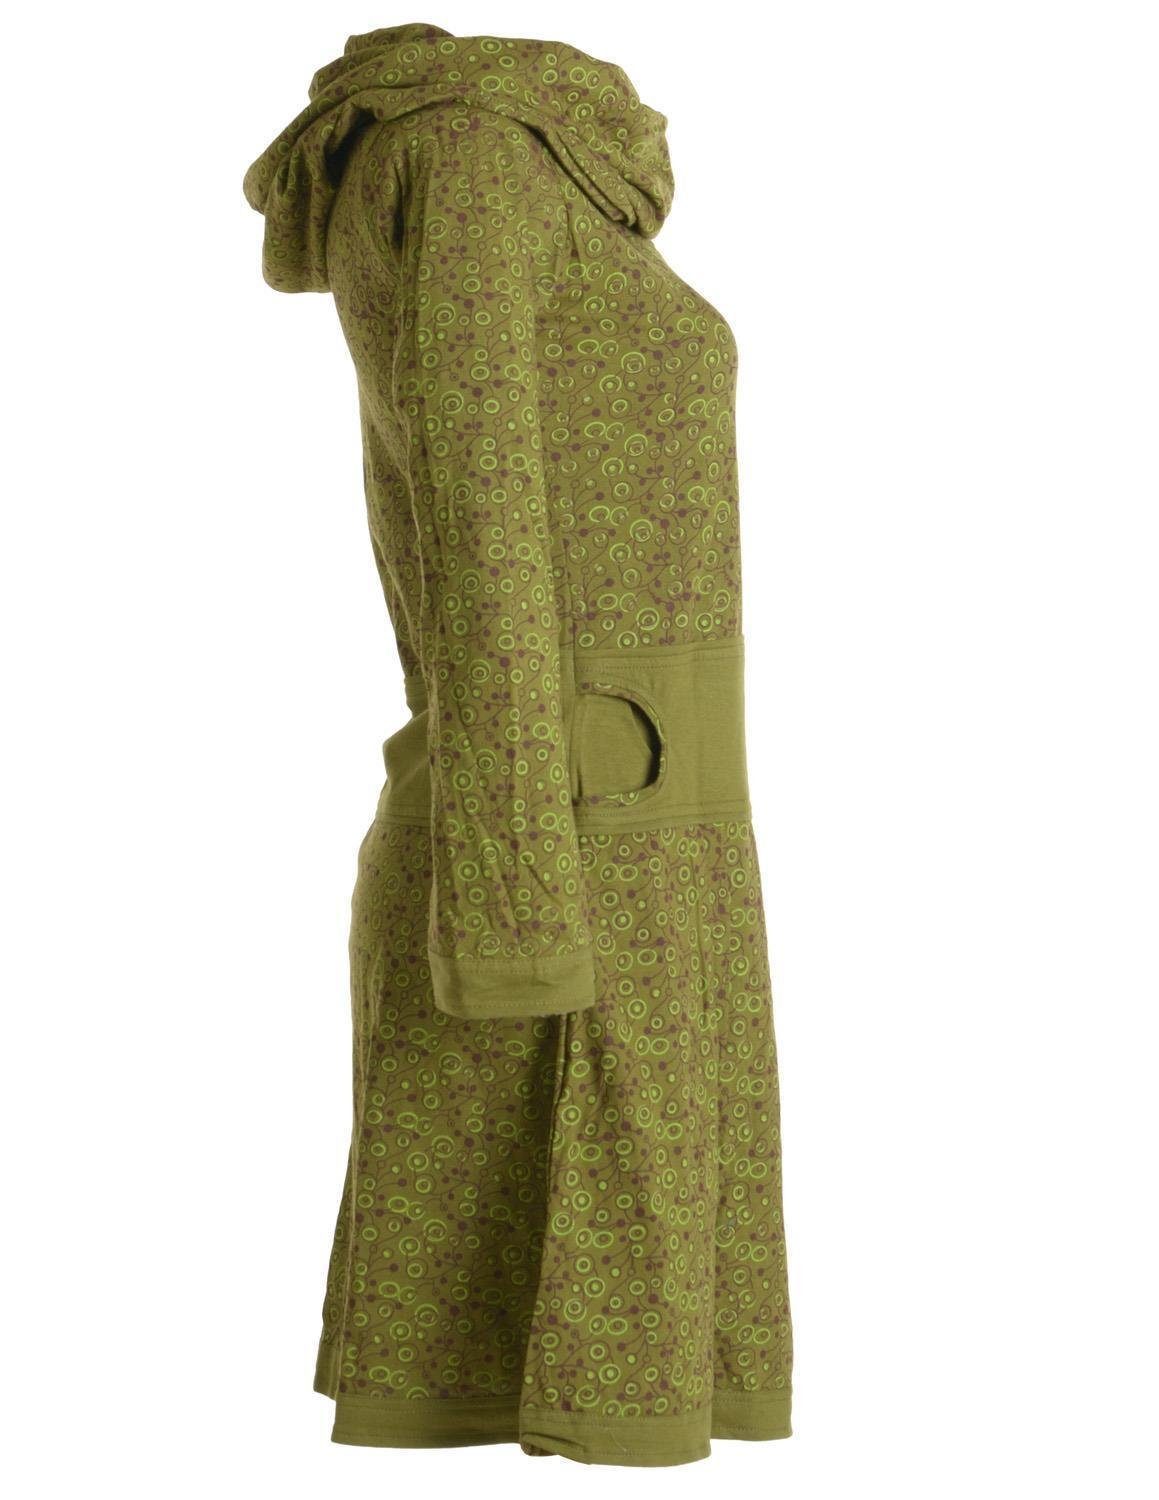 Vishes Jerseykleid Bedrucktes mit Hippie Boho, aus Style Baumwolle Goa, Schalkragen Kleid Ethno, olive